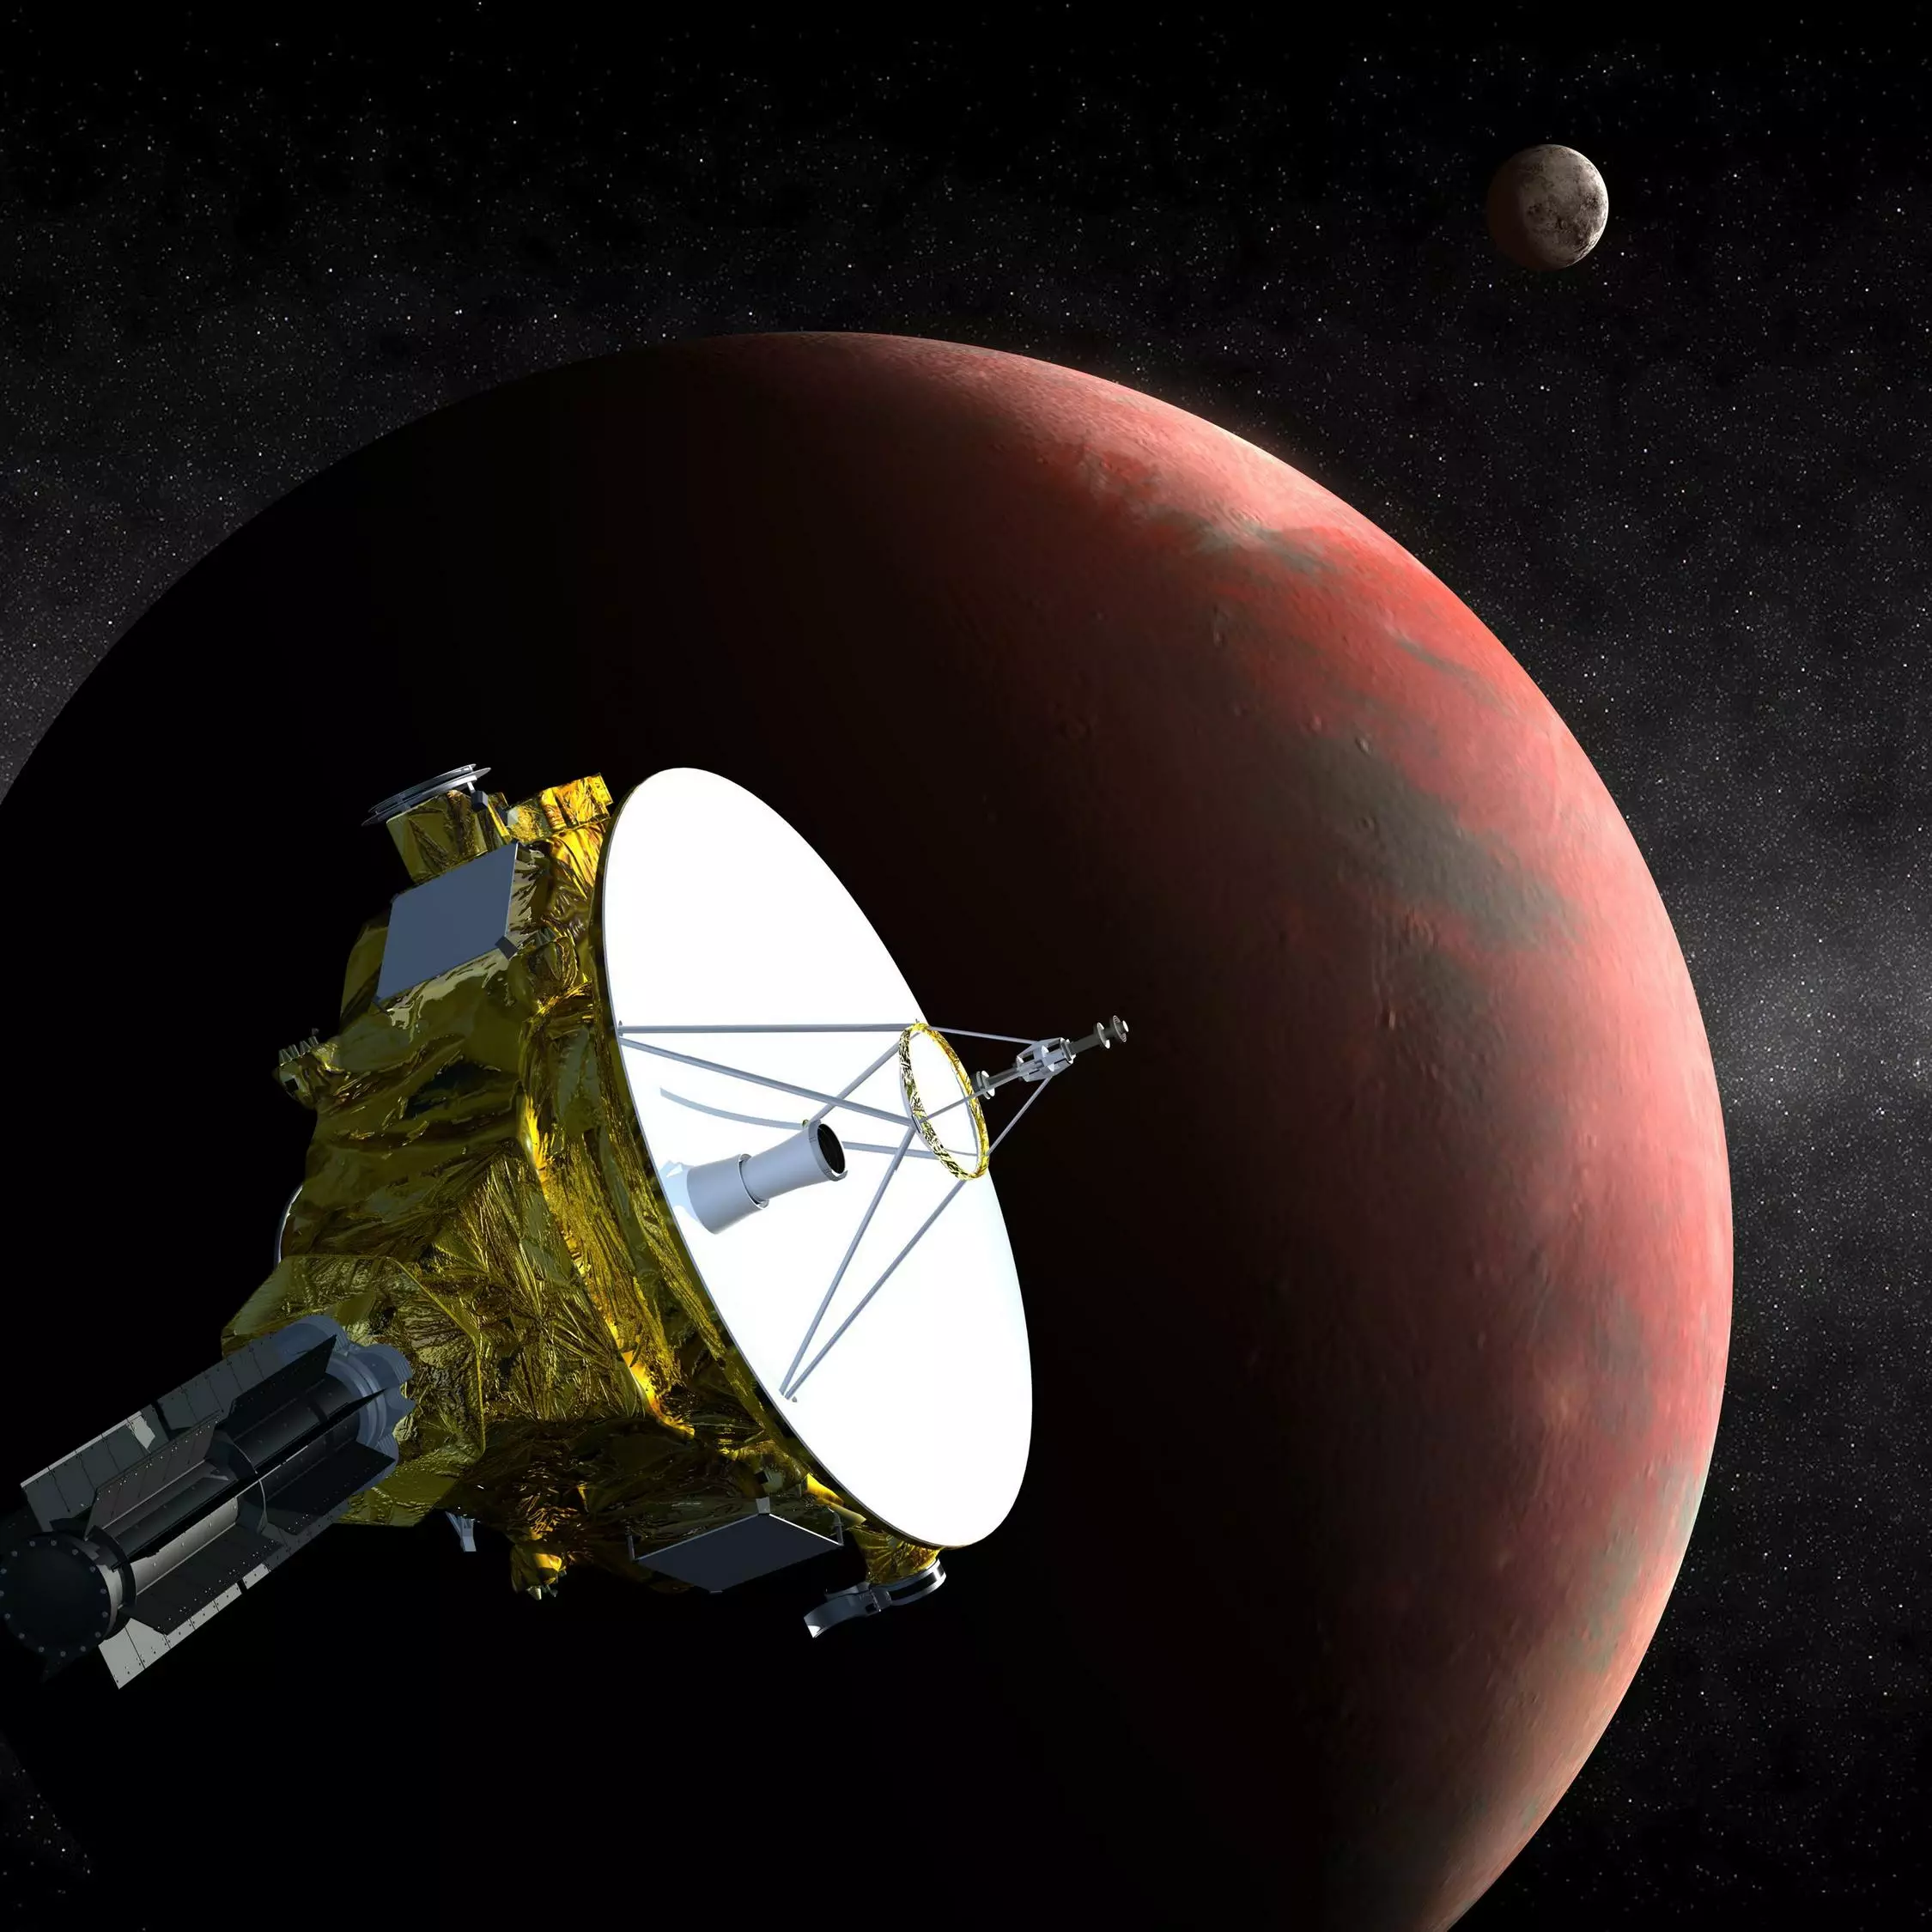 Аппарат New Horizons, отправленный на изучение Плутона и объектов пояса Койпера